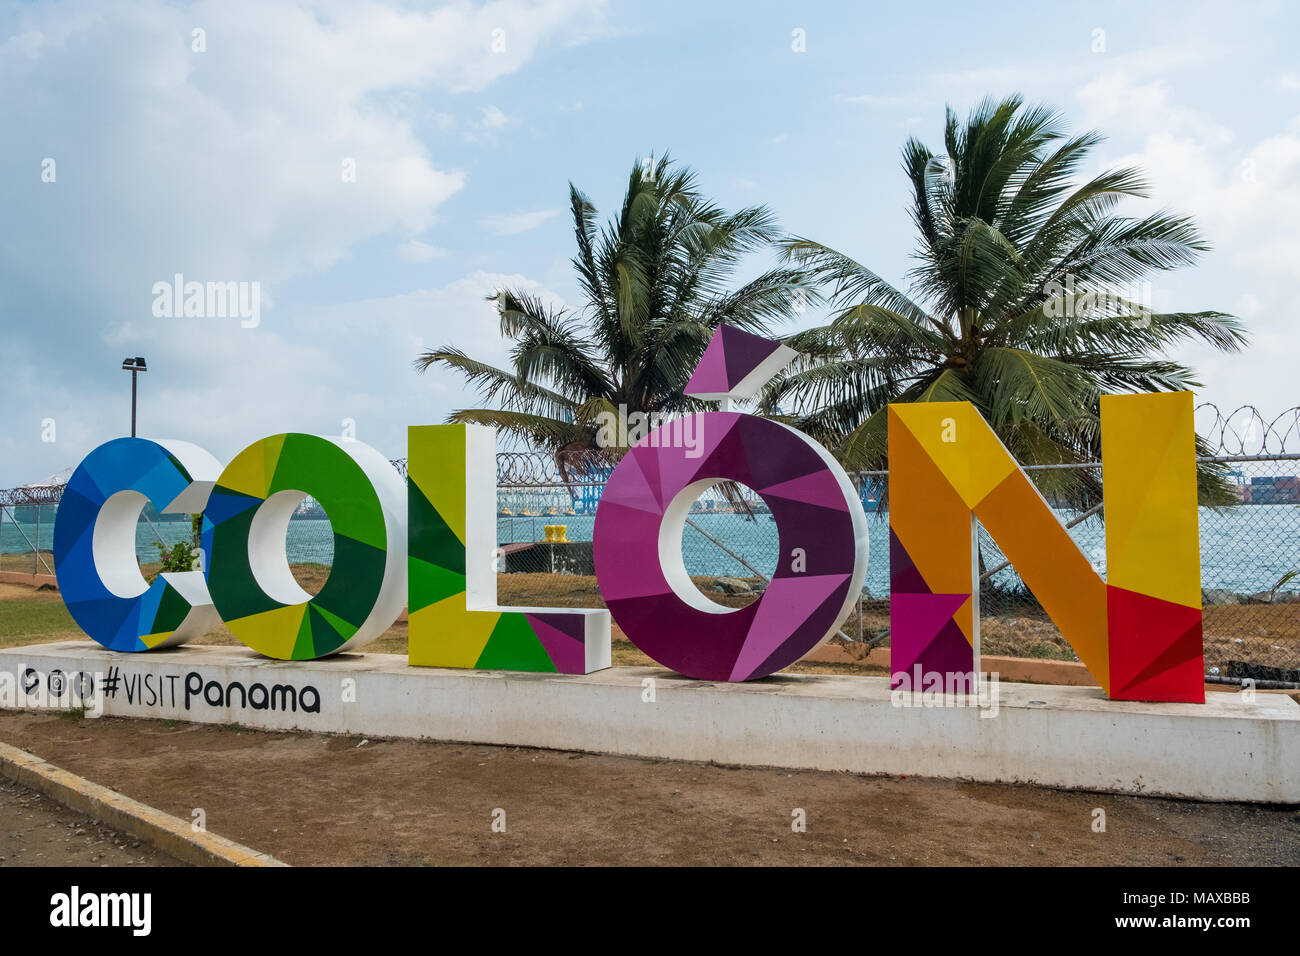 Colon, Panama - mars 2018 : célèbre nom coloré signe de la ville Colo au Panama Banque D'Images